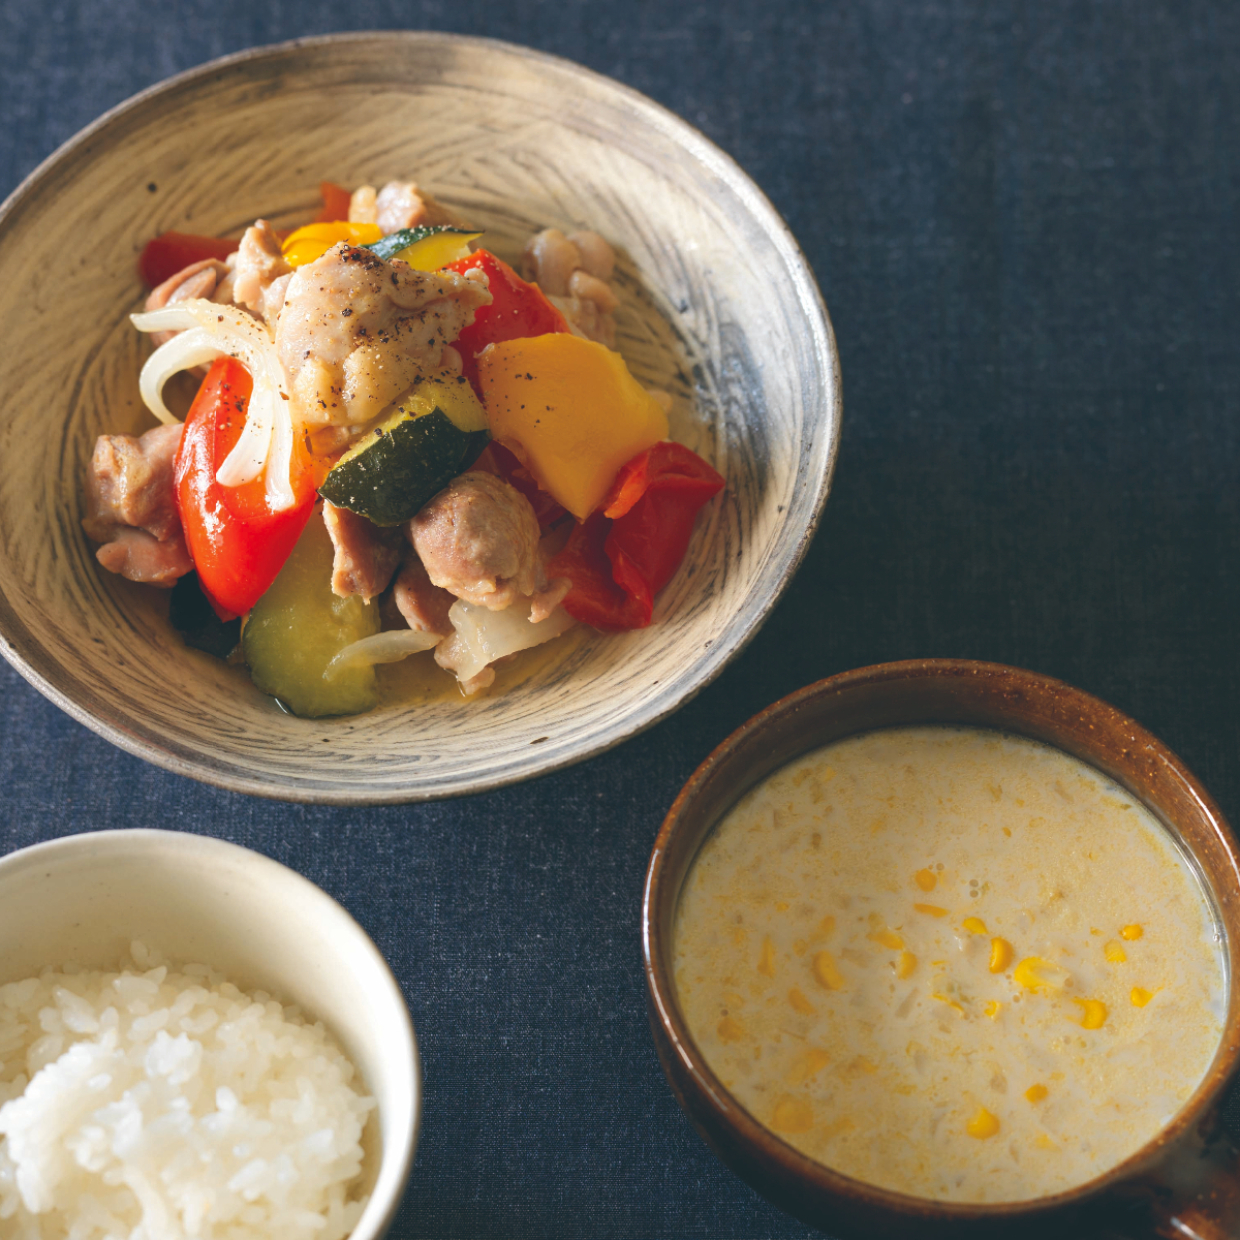  【料理家・飛田和緒さんの一汁一菜】夏の野菜を鶏と合わせてさっぱりと！夏の名残を楽しむレシピ3選 